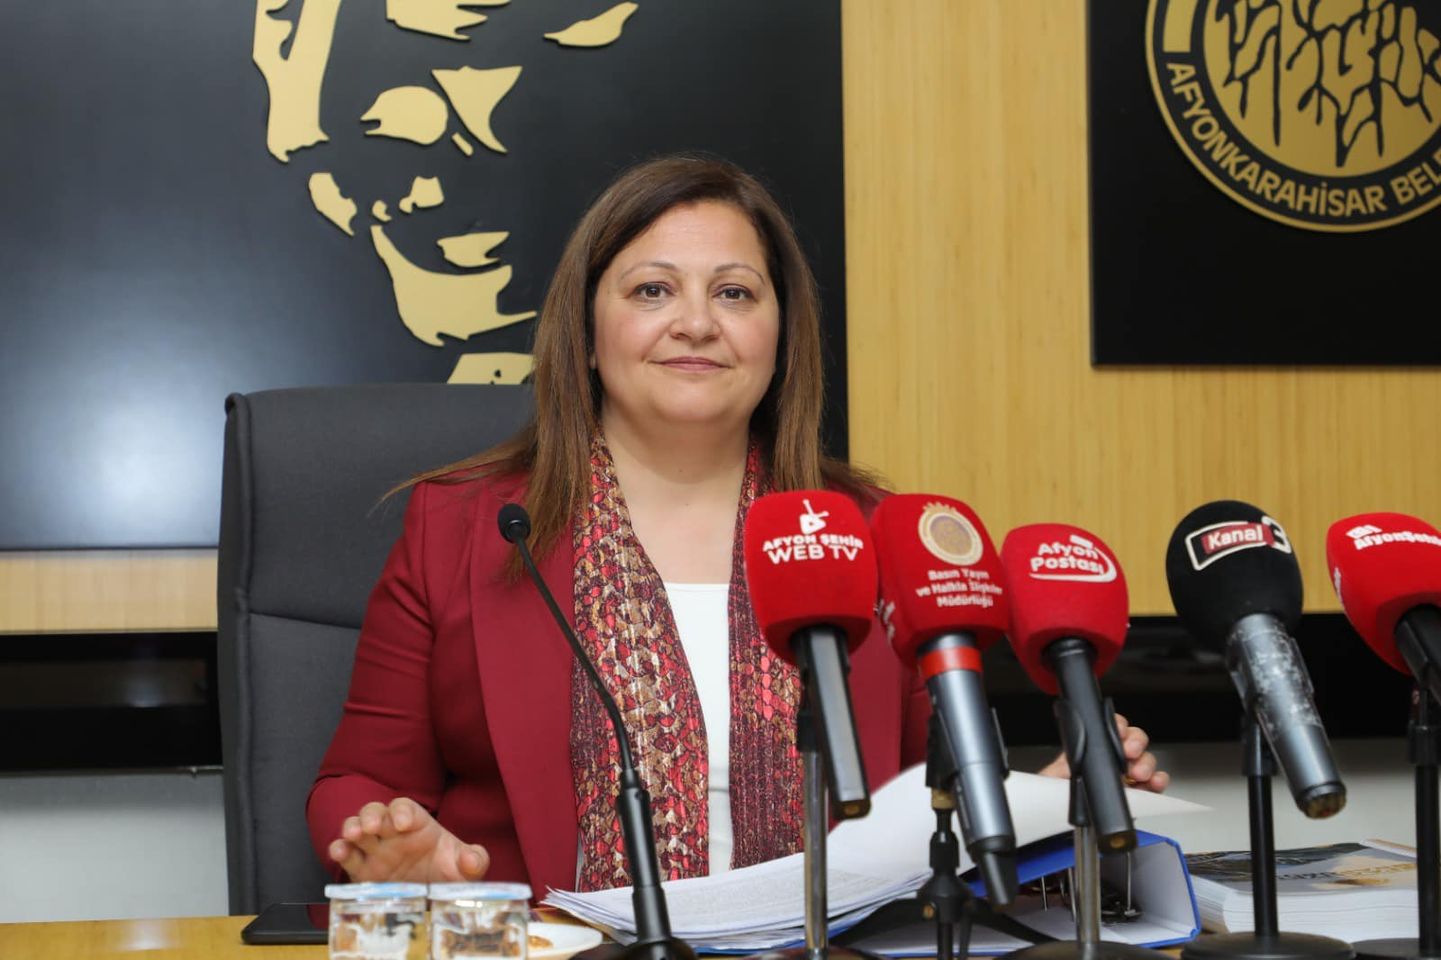 Afyonkarahisar Belediye Meclisi, Yeni Döneme Güçlü Adımlarla Başladı